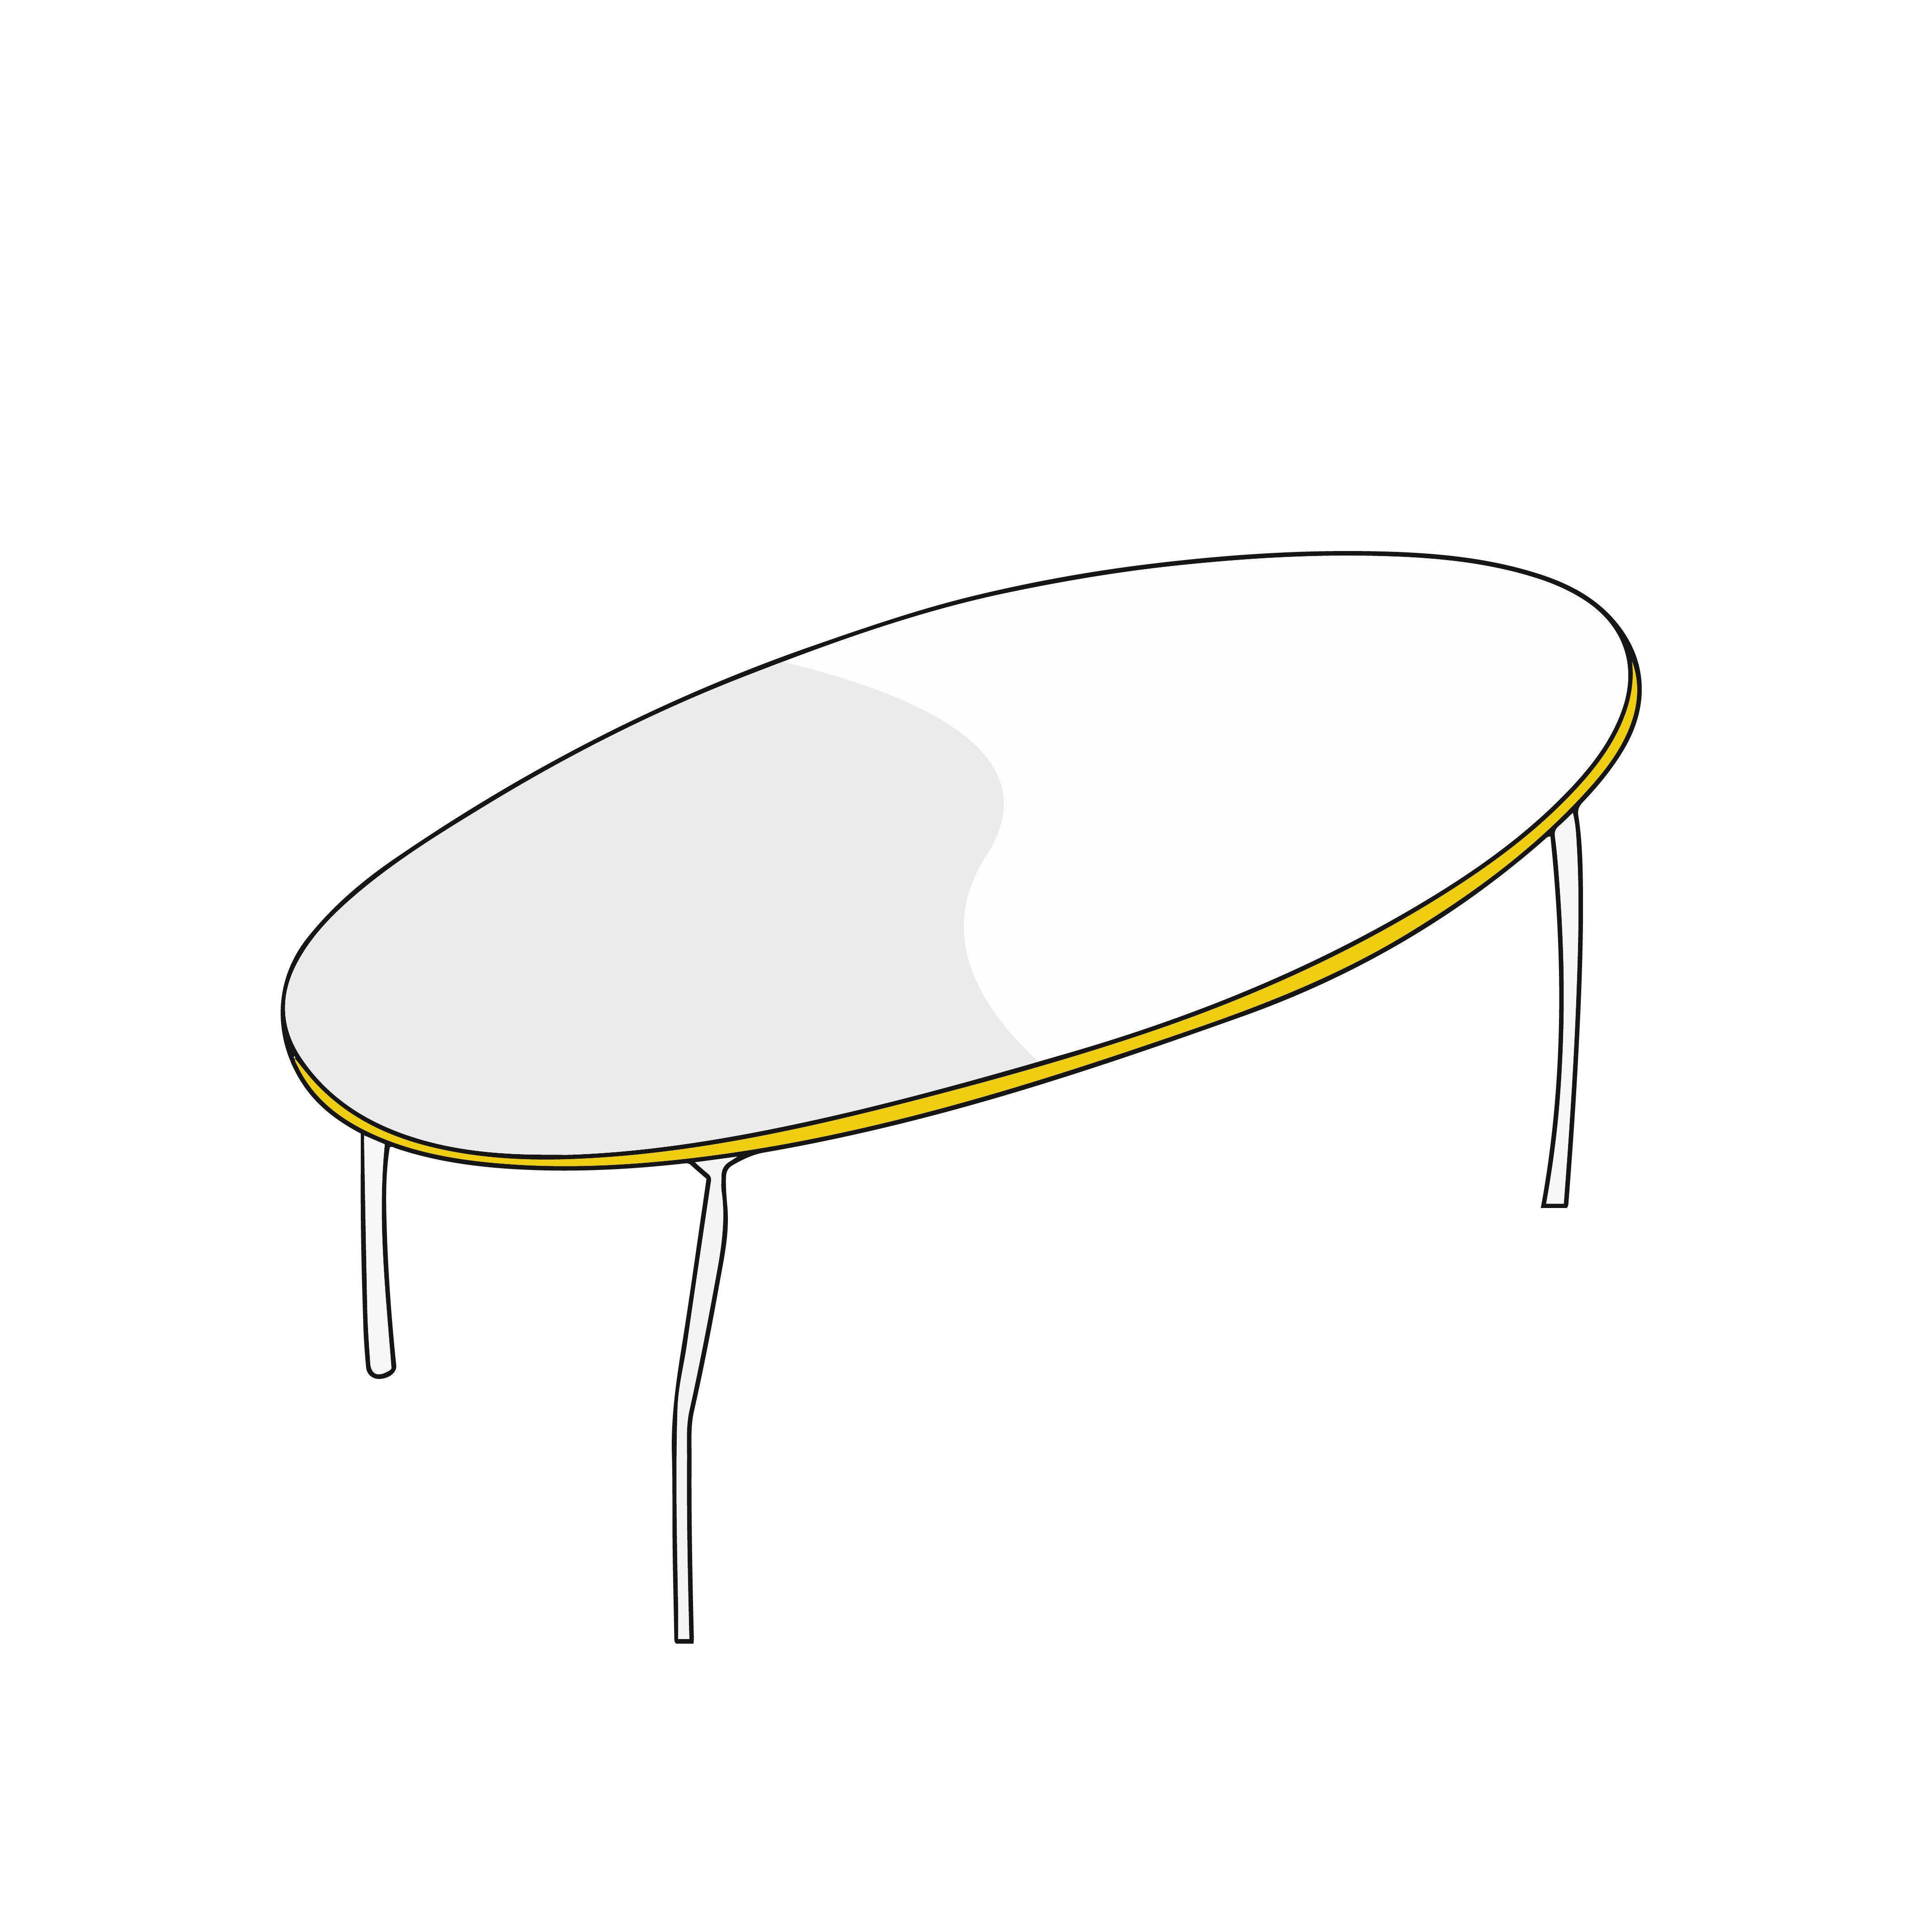 Custom Rectangle Table Cover Model 2